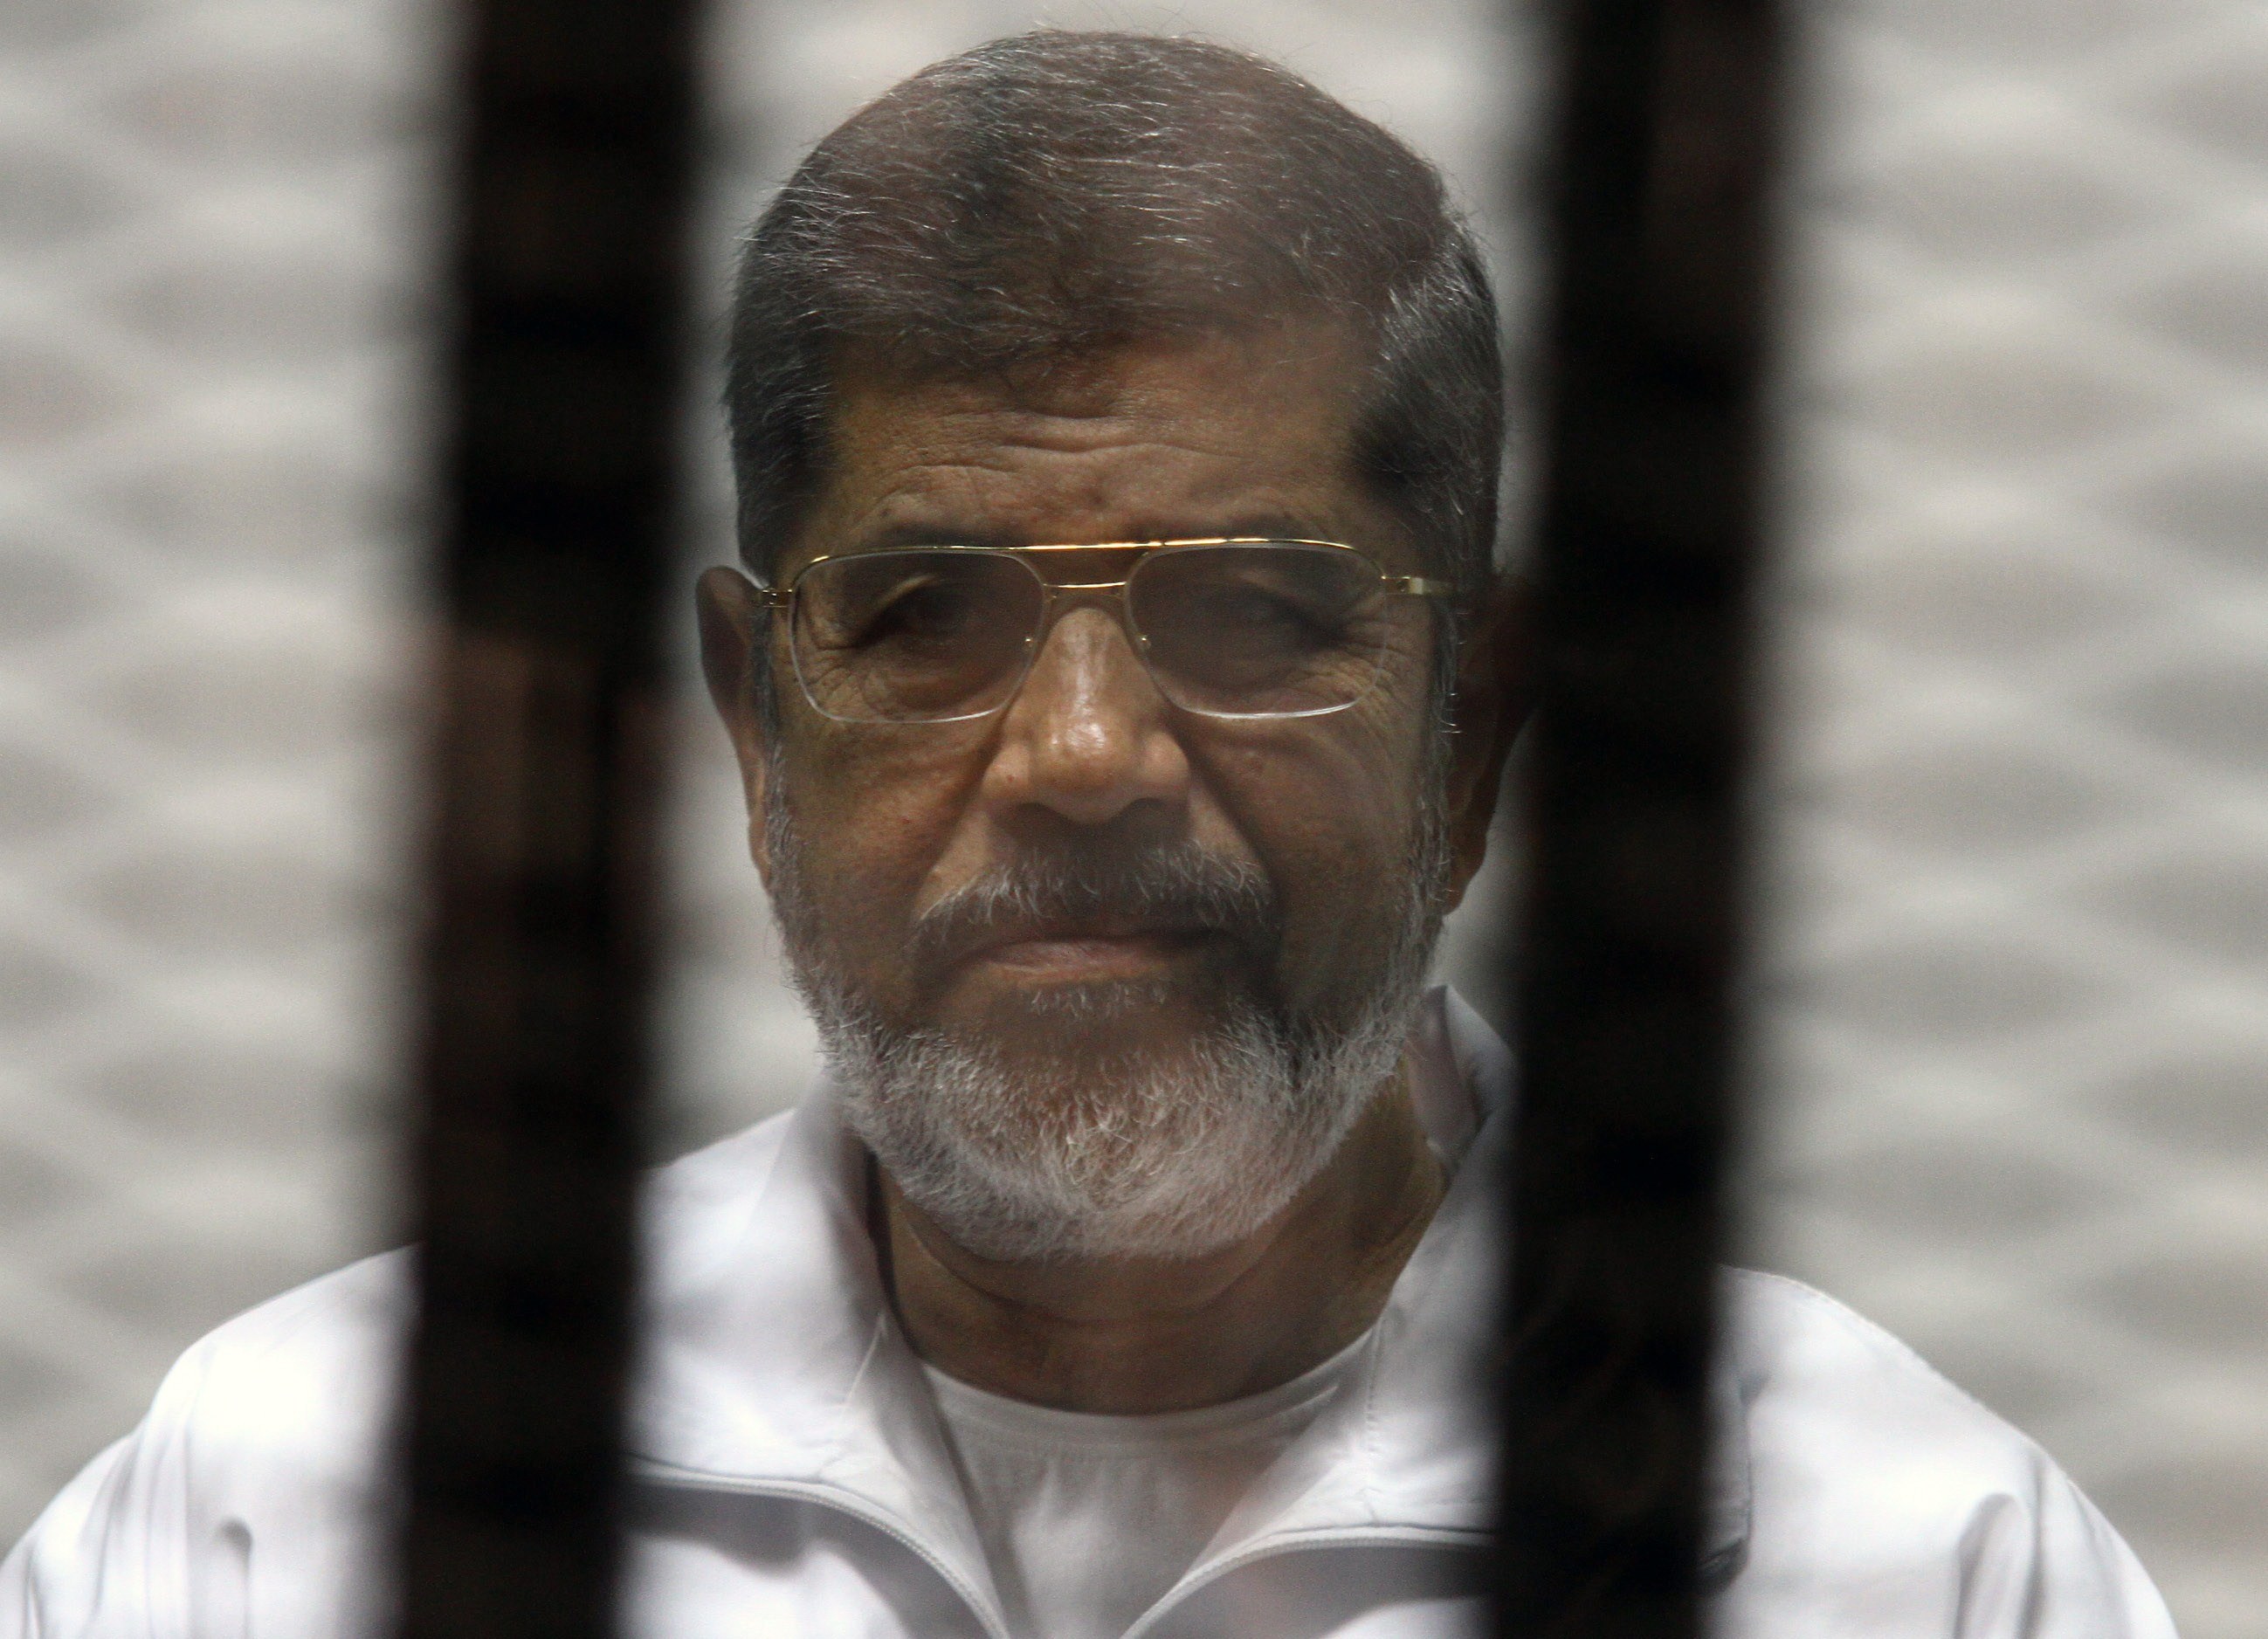 نتيجة بحث الصور عن مرسي بالزي الازرق في السجن